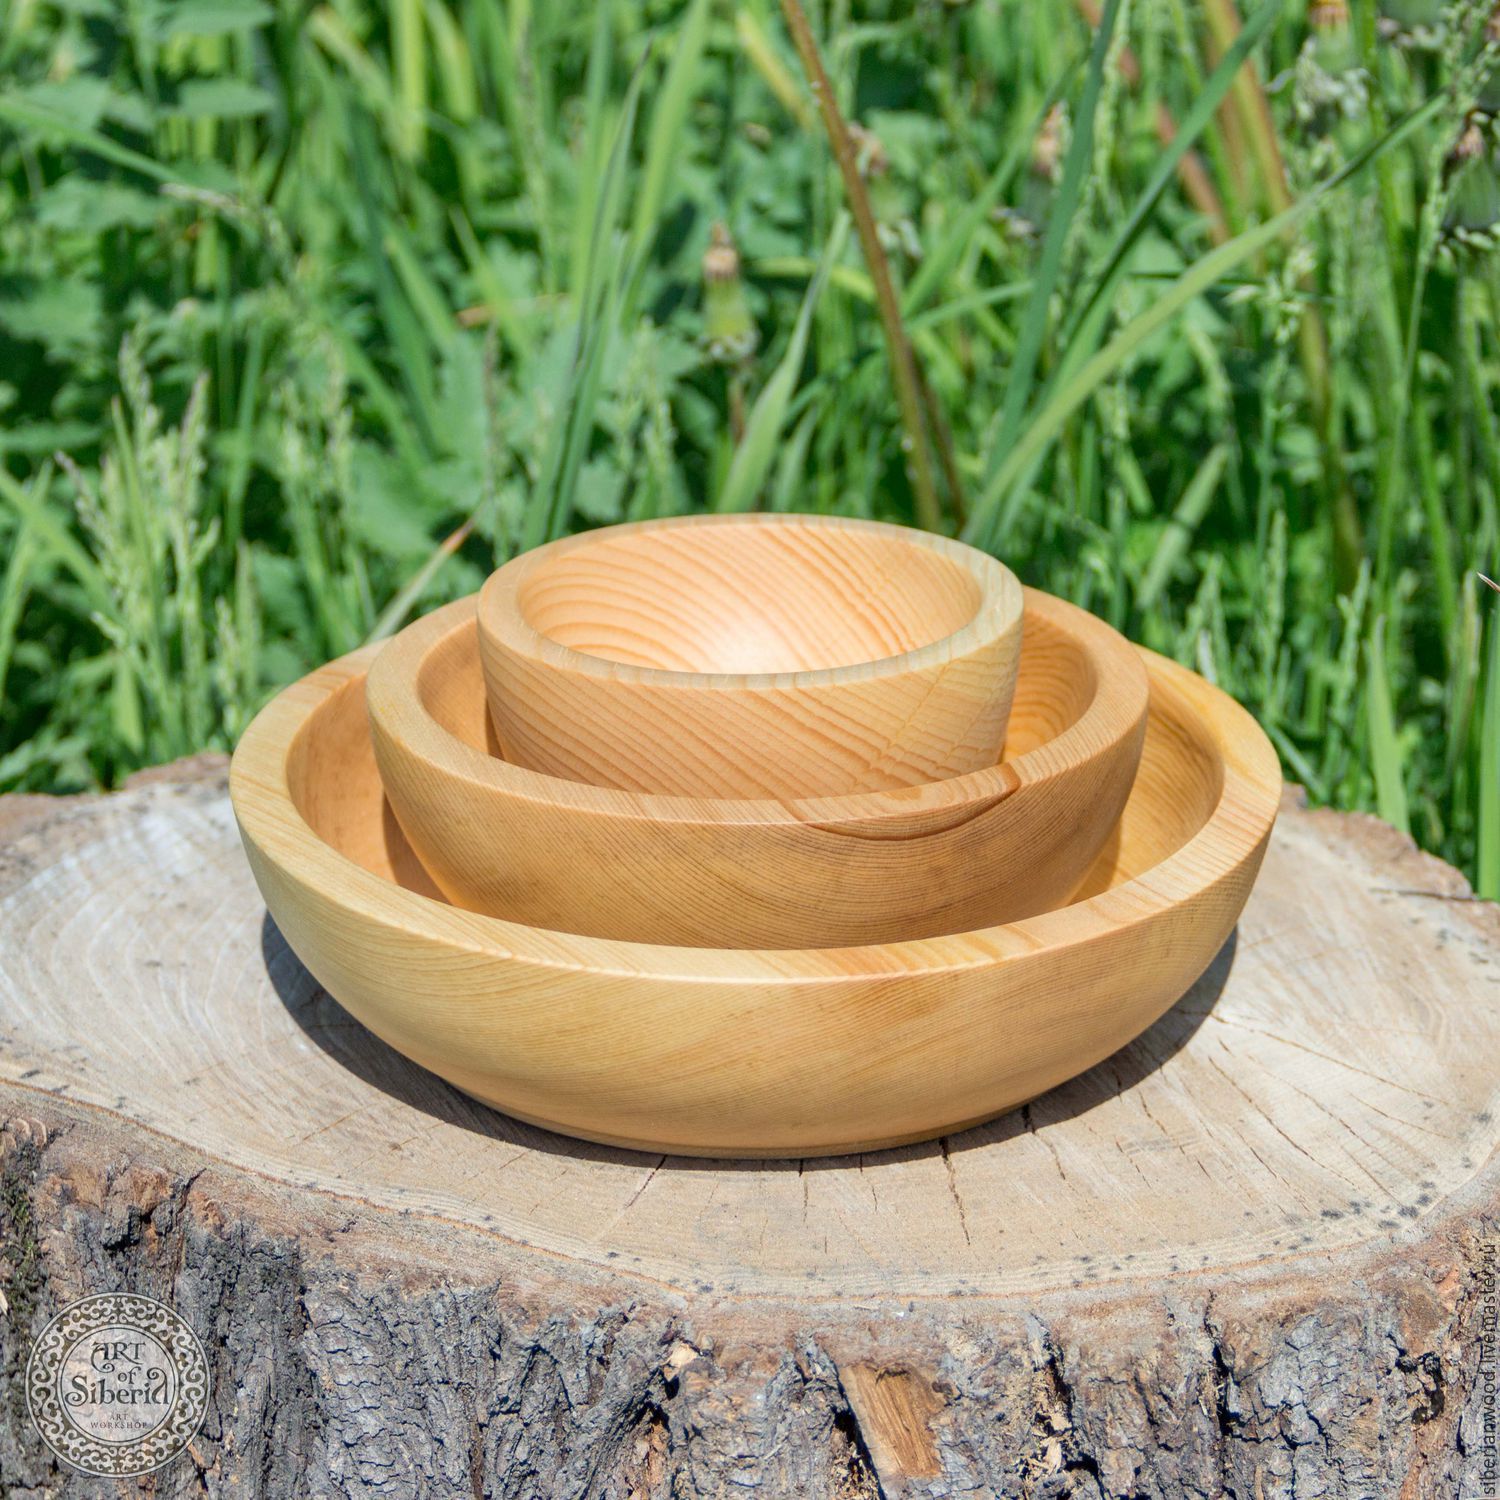 Набор деревянной посуды из древесины сибирского кедра. TN2